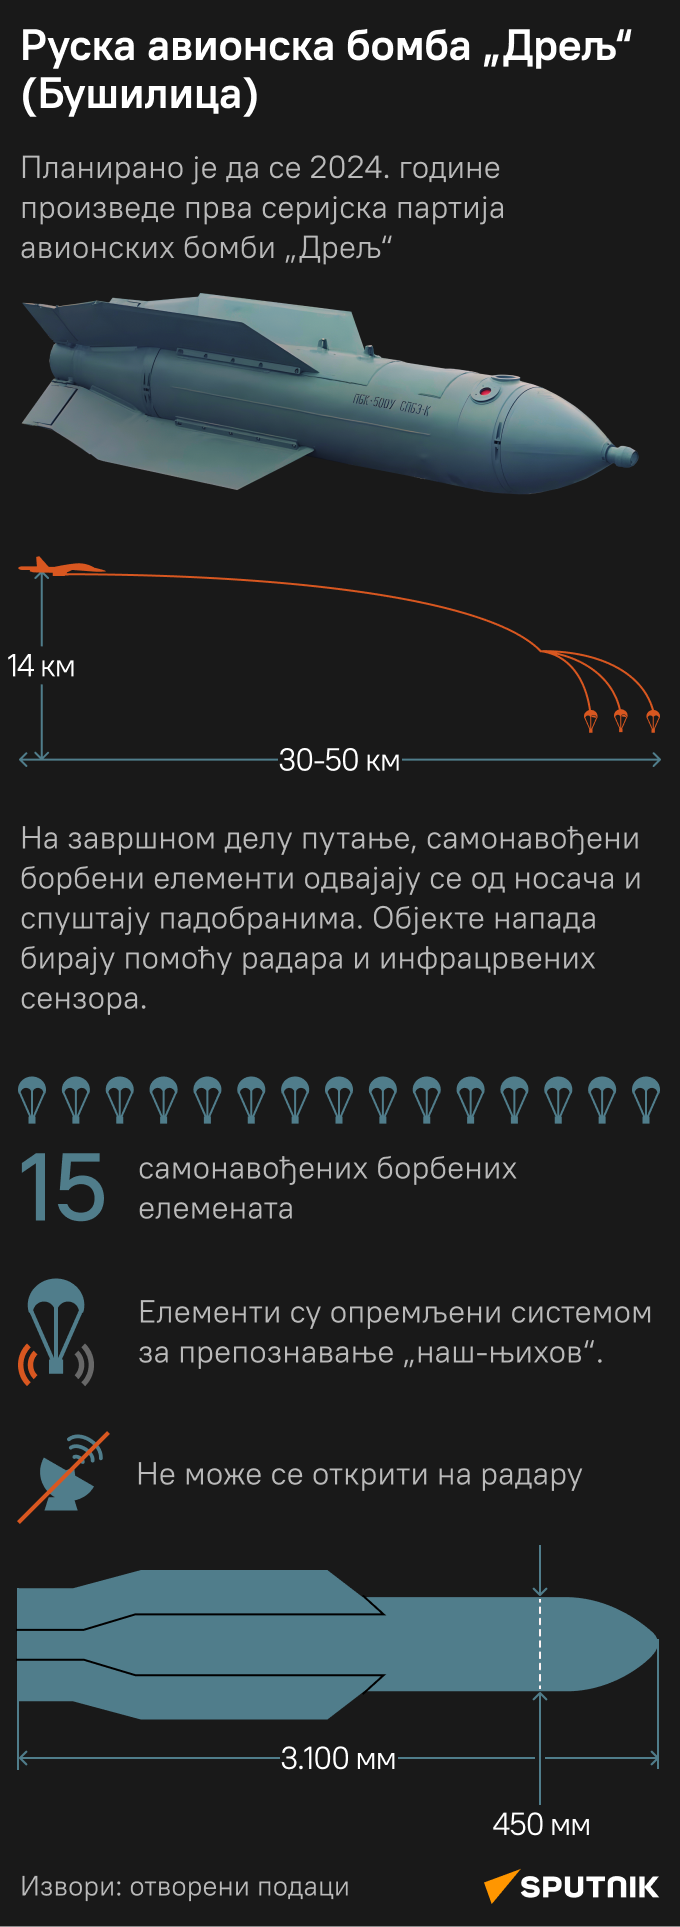 инфографика бомба бушилица  ЋИР моб - Sputnik Србија